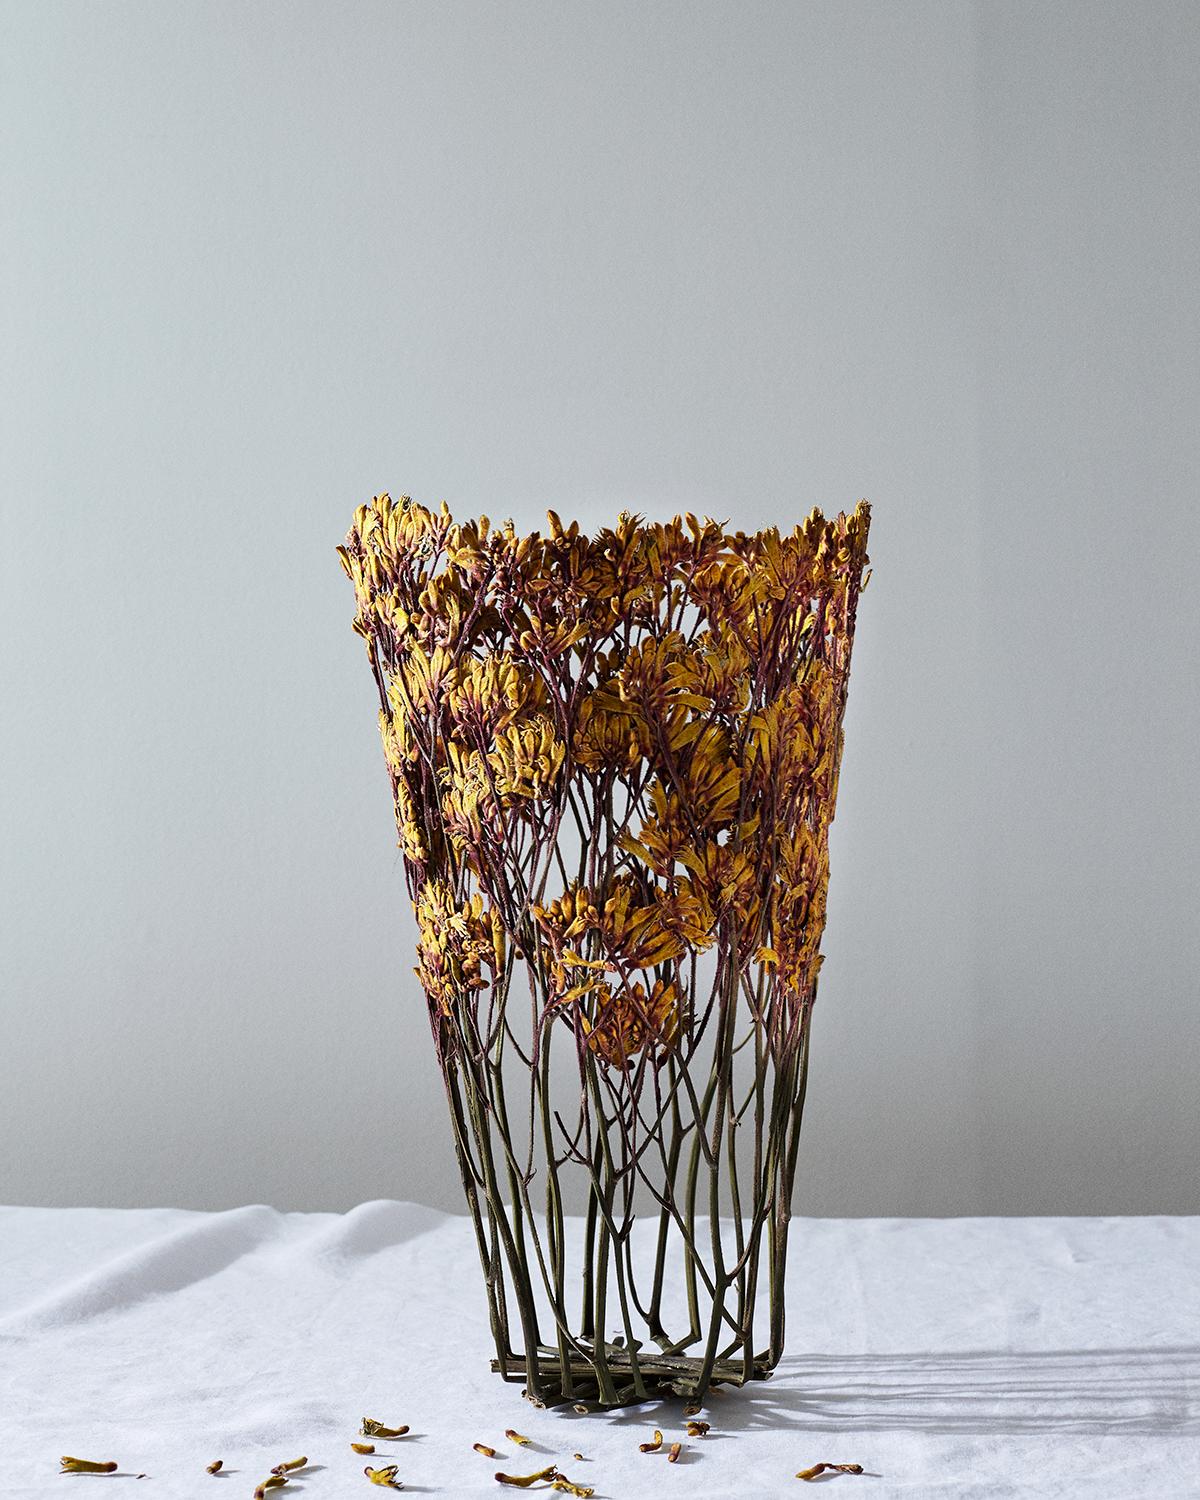 Vase artisanal créé avec des fleurs séchées au soleil, acquises localement au marché de Londres, ville de son auteur. Les fleurs sélectionnées sont donc toujours uniques : après un processus de séchage de deux mois, les fleurs sont tissées ensemble